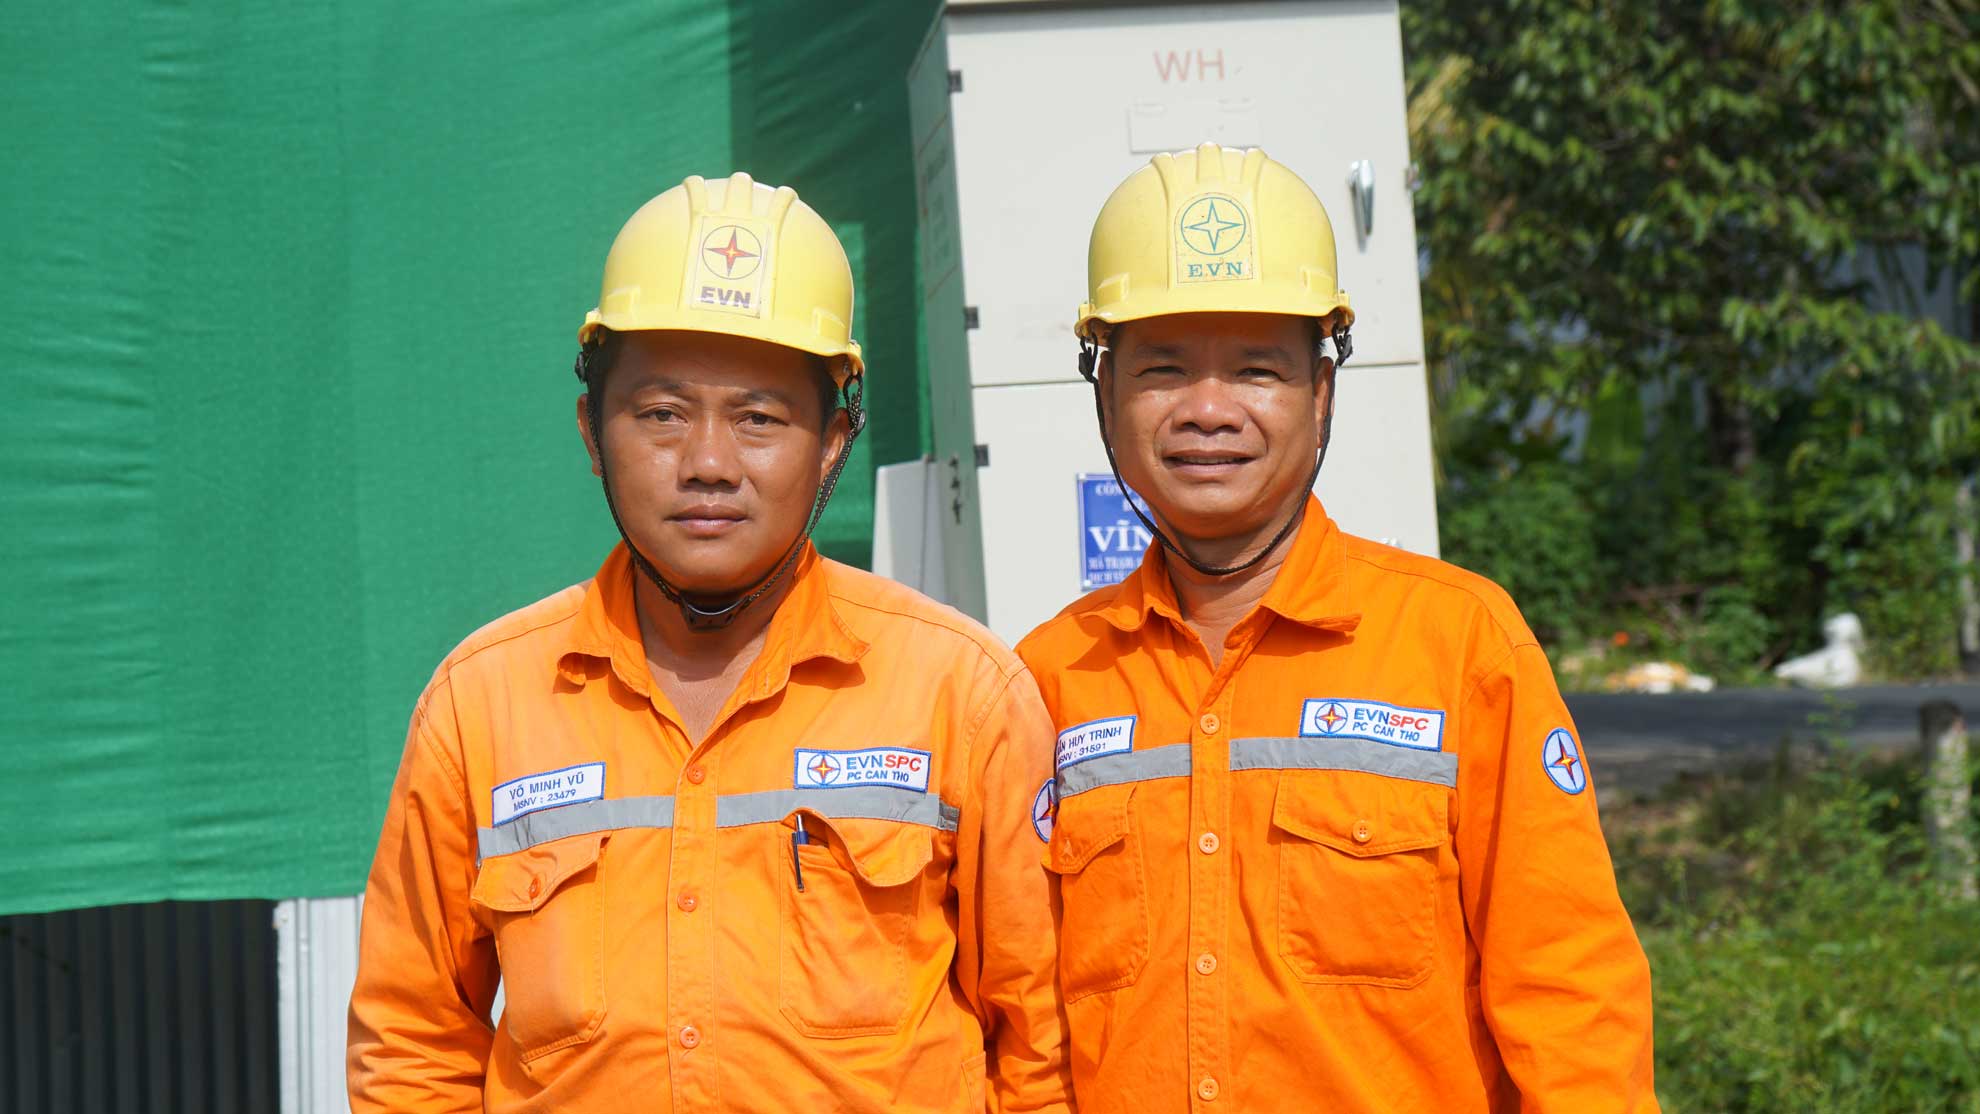 Anh Chinh (bên phải) và nhiều đồng nghiệp khác luôn nỗ lực hoàn thành nhiệm vụ được giao dù điều kiện khó khăn. Ảnh: Mỹ Ly